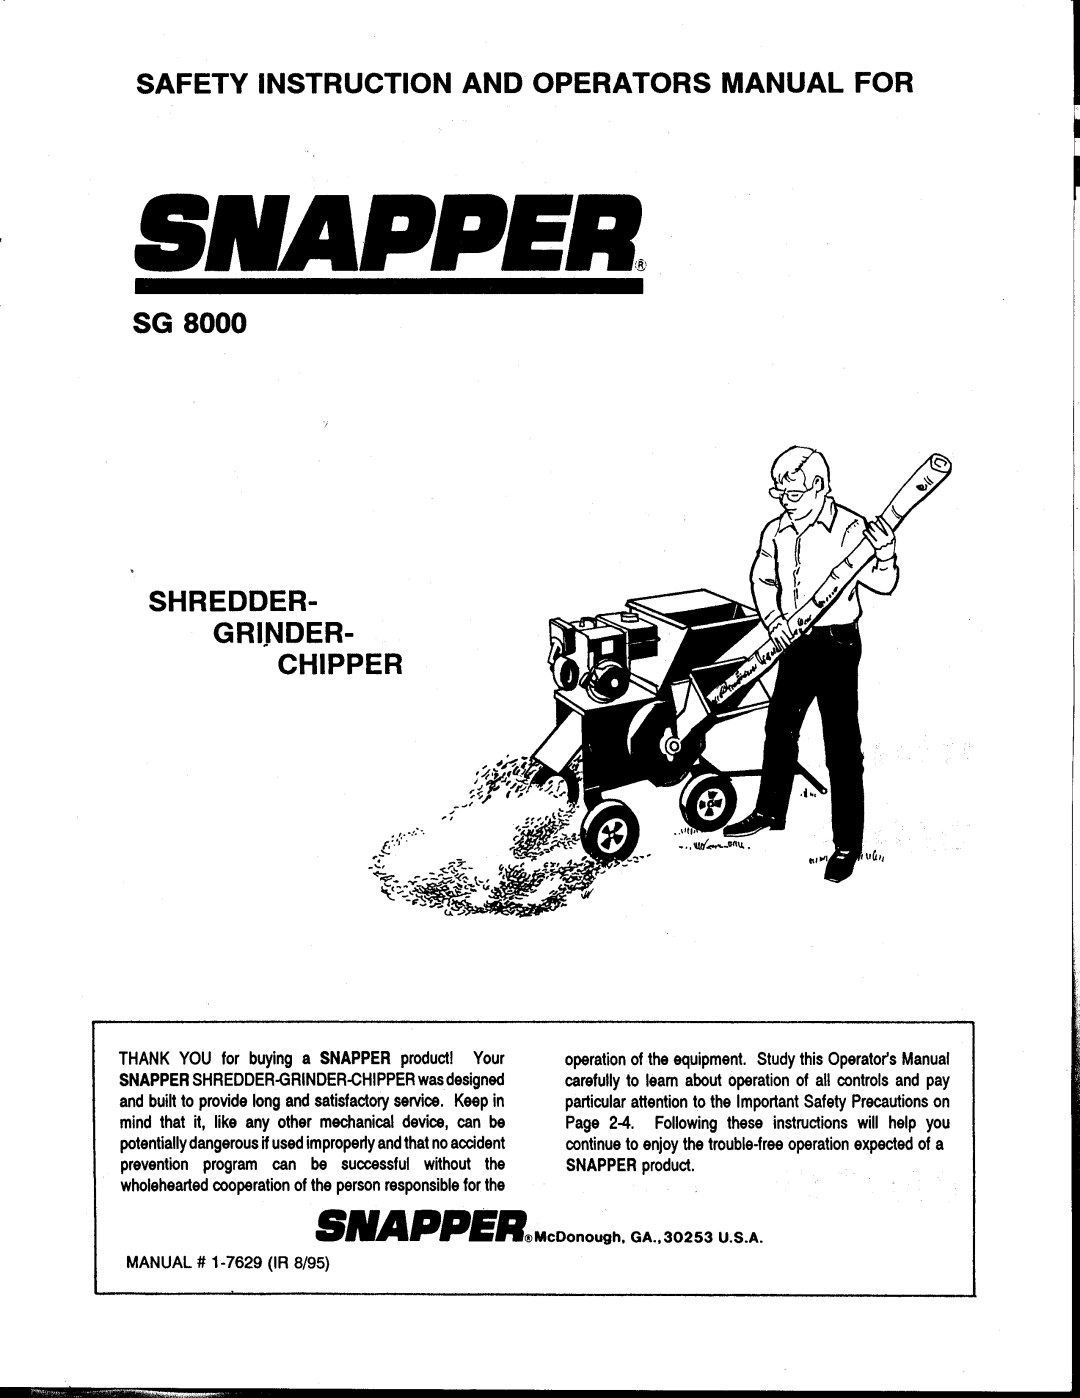 Snapper SG 8000 manual 